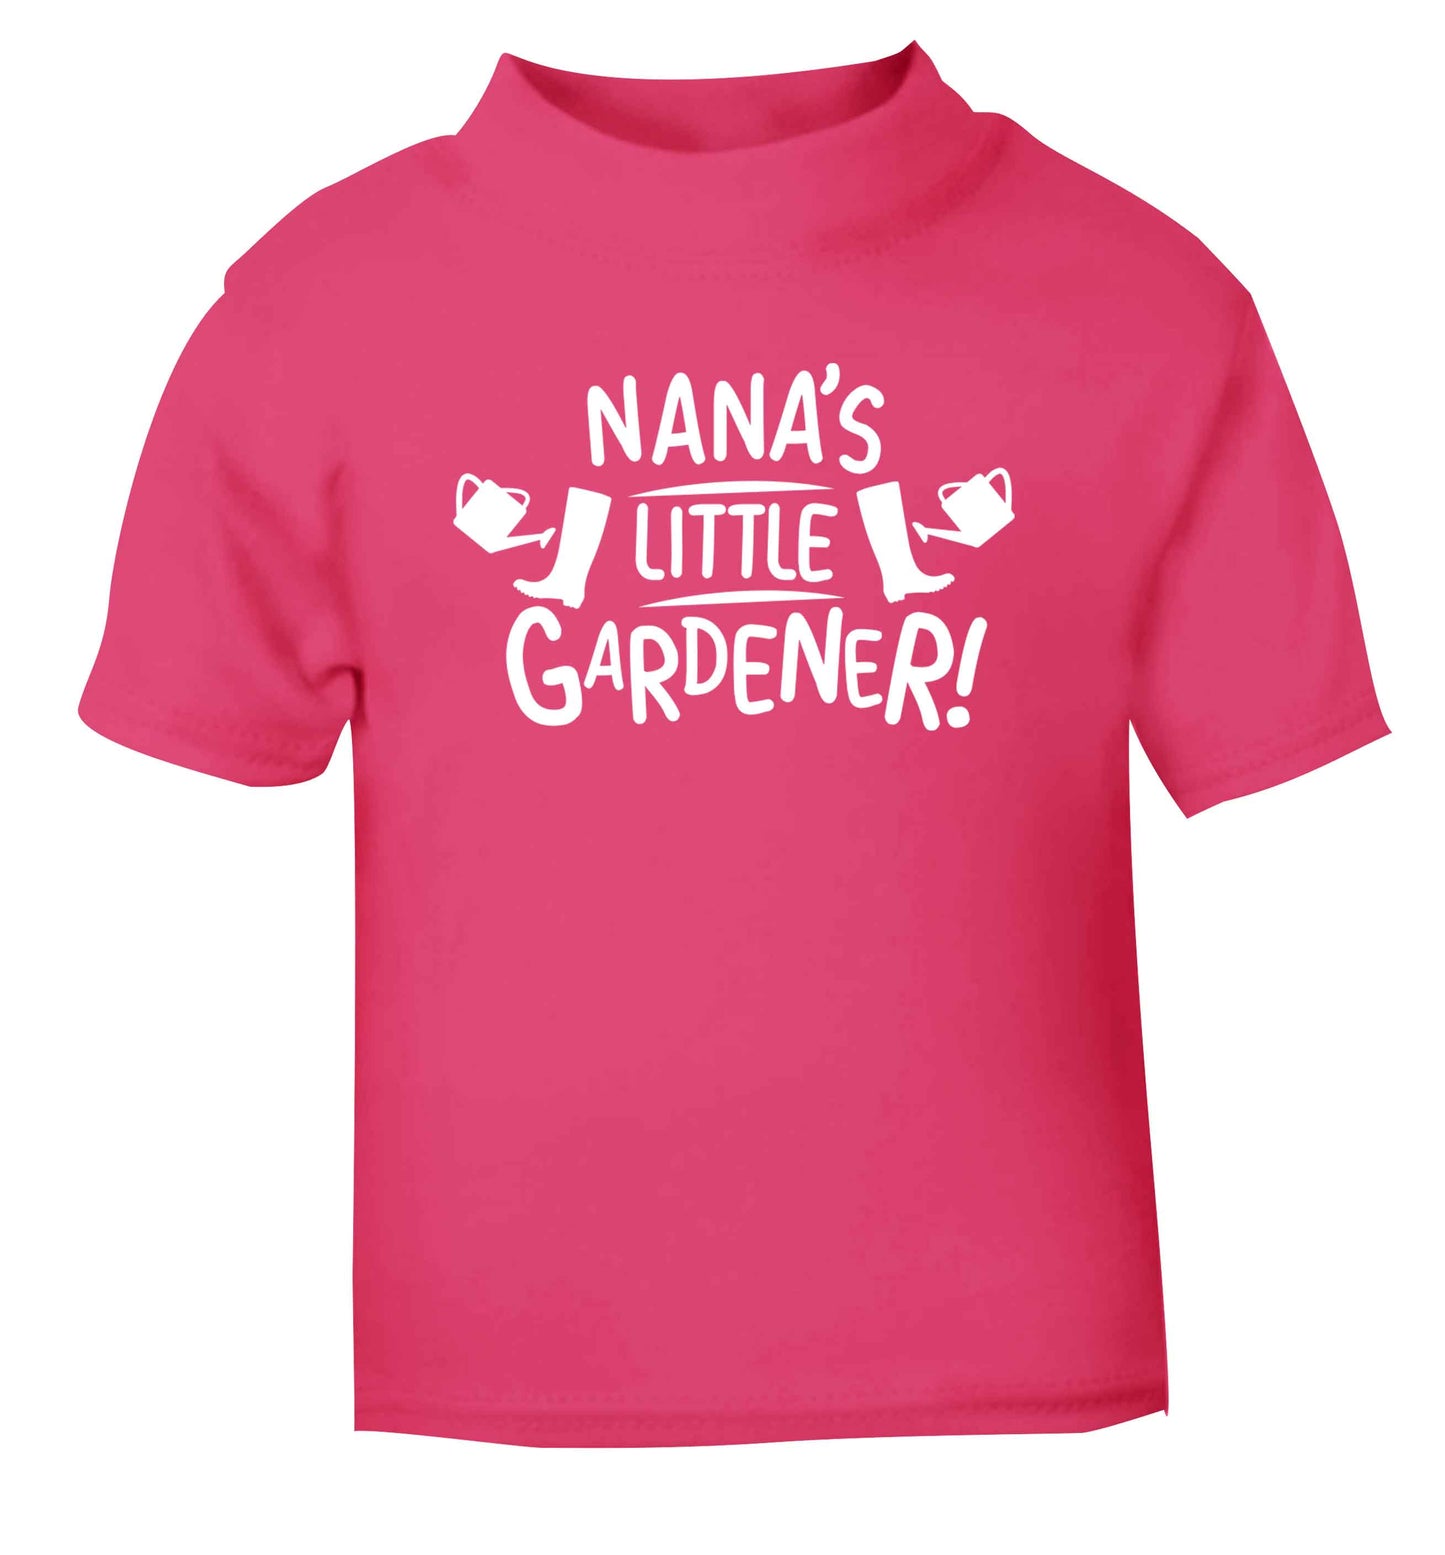 Nana's little gardener pink Baby Toddler Tshirt 2 Years